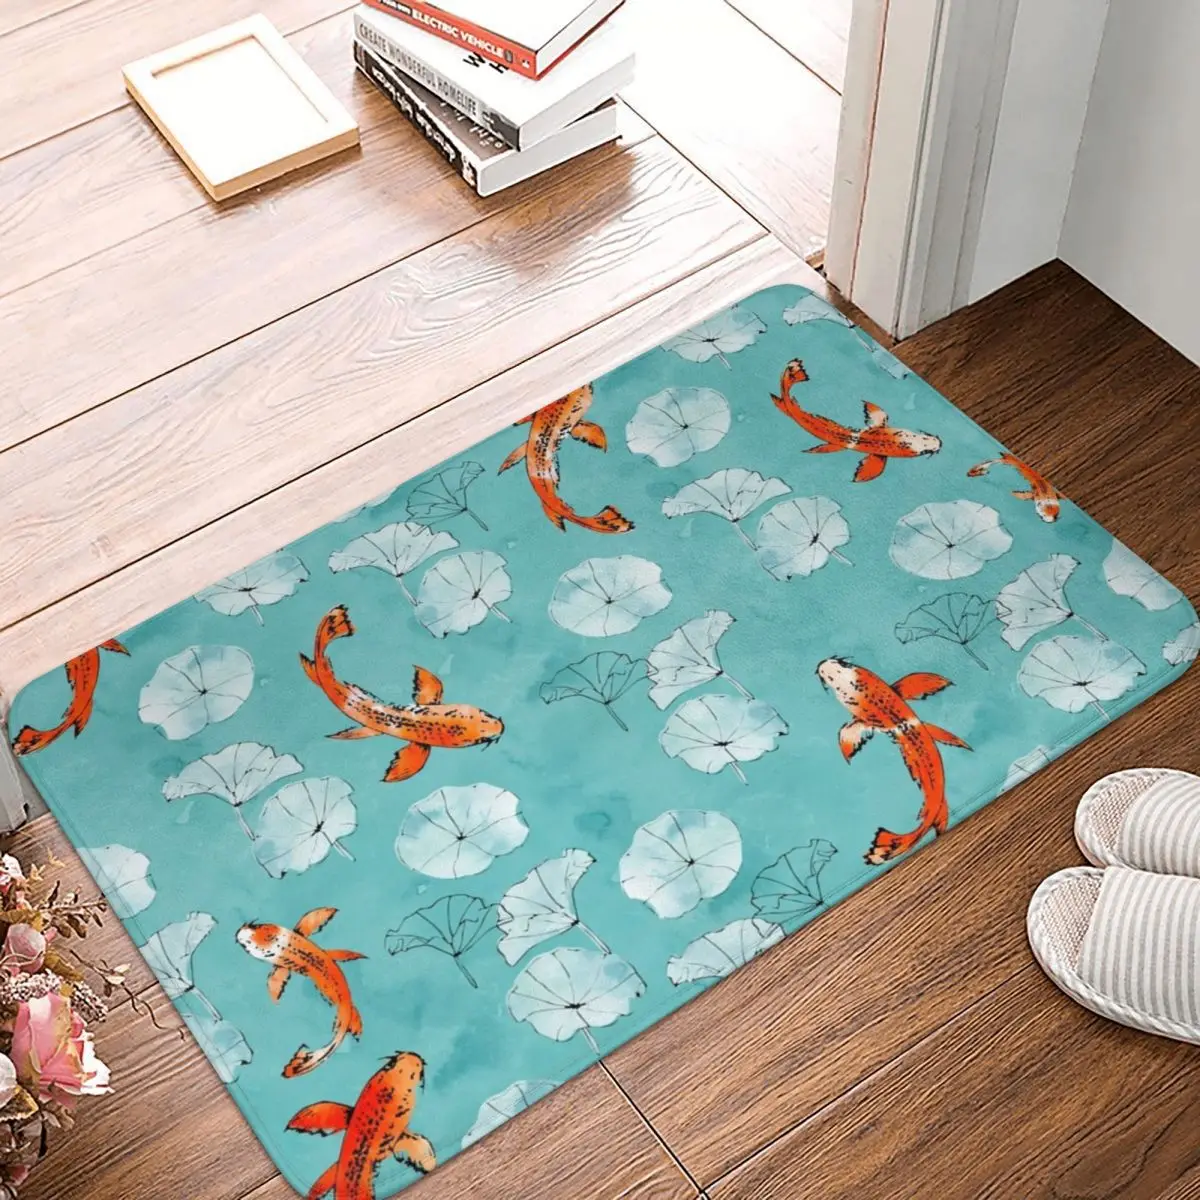 

Японский коврик Koi Fish (4), ковер, коврик, подкладка для ног, полиэстер, нескользящий, прочный, для входа, кухни, спальни, балкона, туалета, ванной